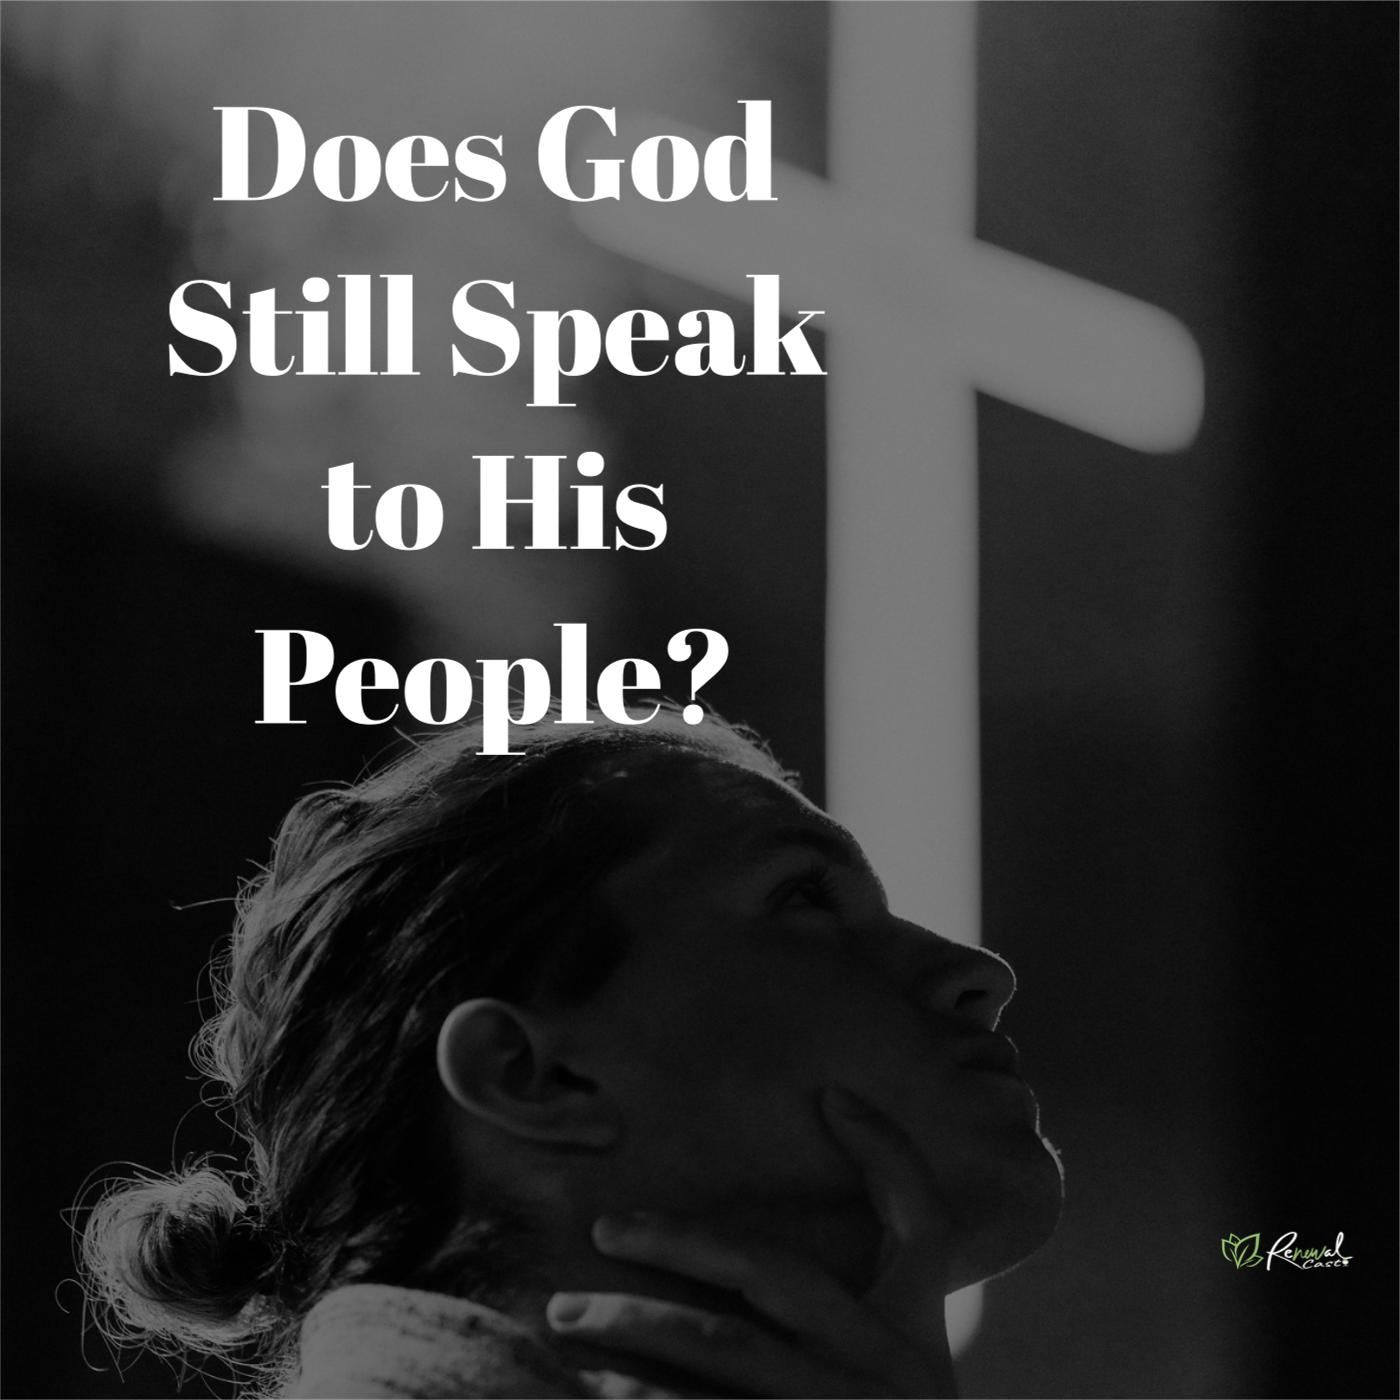 #55 REWIND: Does God Still Speak Today?